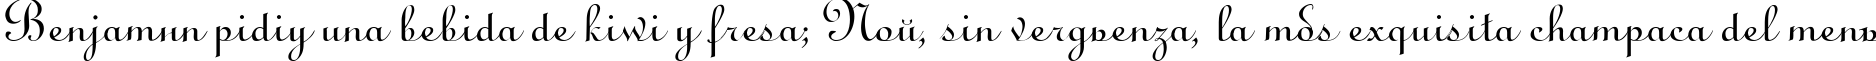 Пример написания шрифтом LirussTYGRA текста на испанском